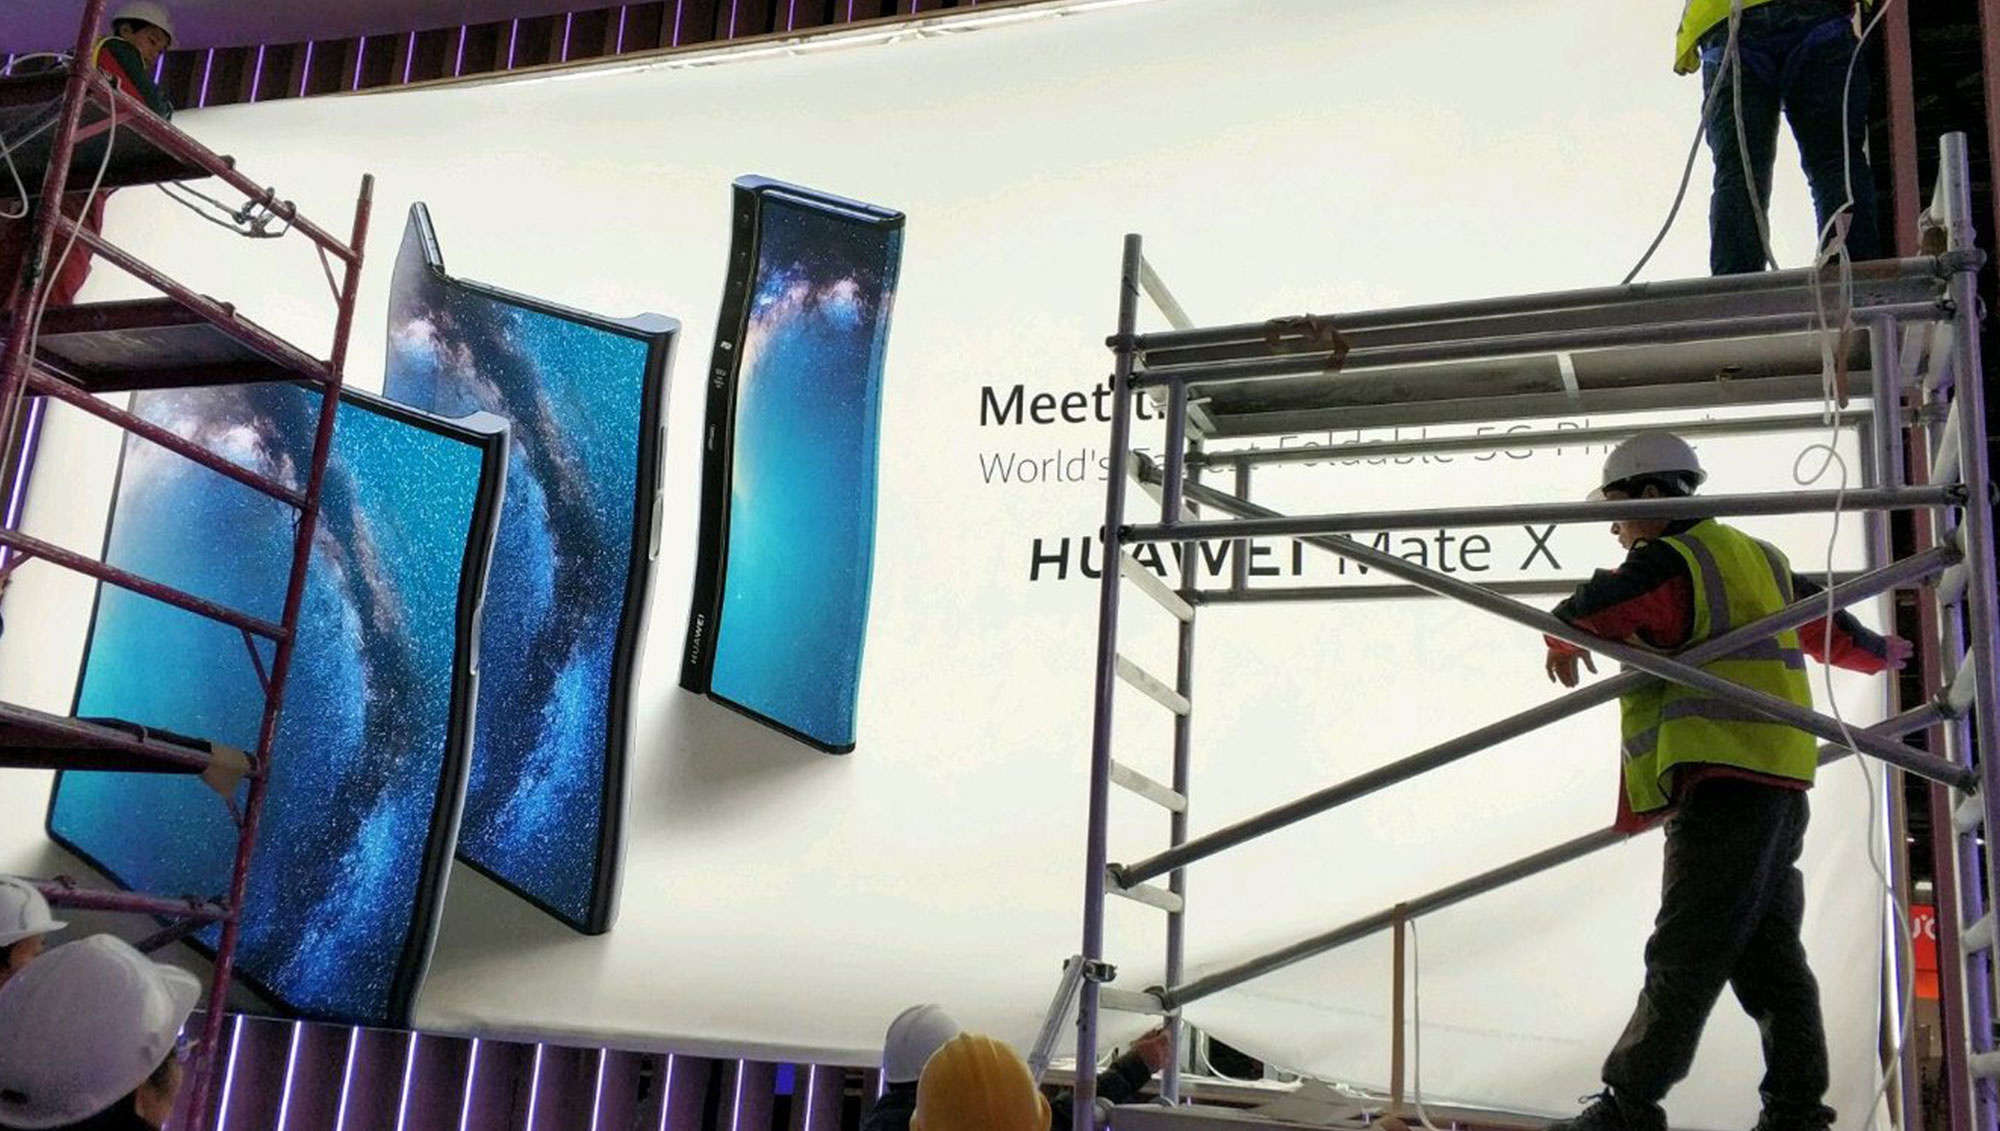 华为首款折屏手机Mate X宣传海报曝光：折法不太一样